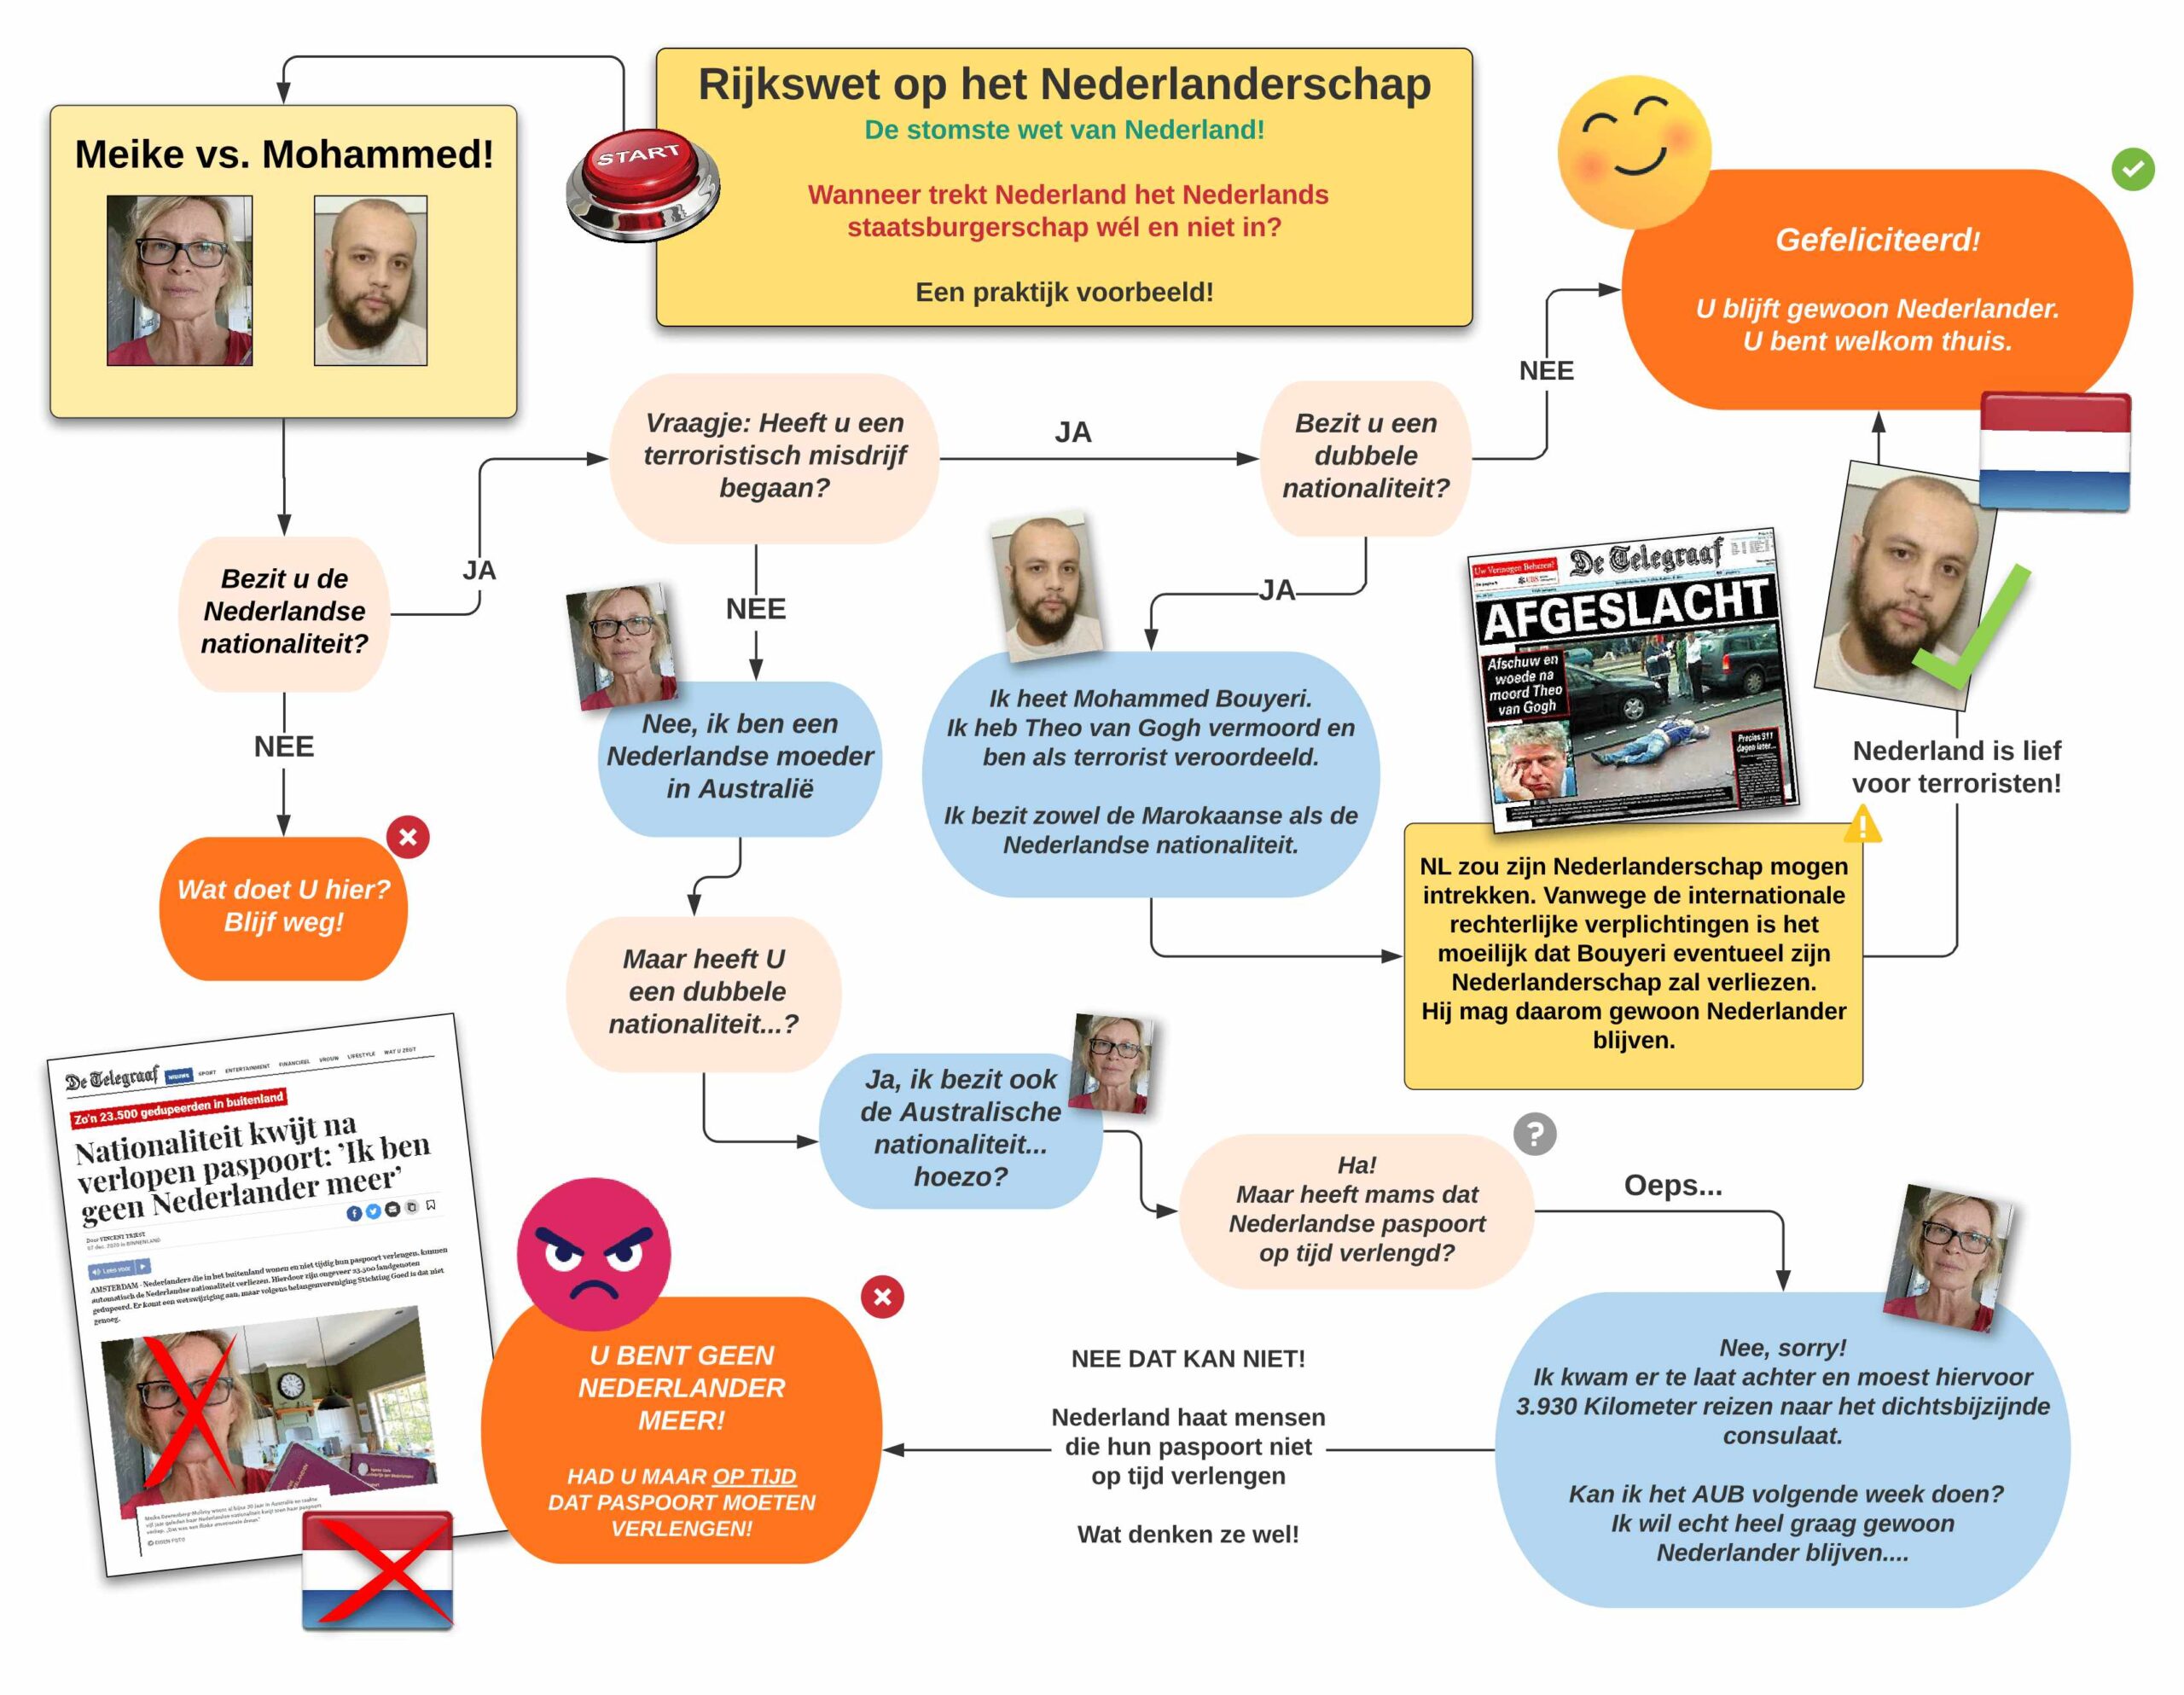 Rijkswet op het Nederlanderschap: De Stomste Wet van Nederland